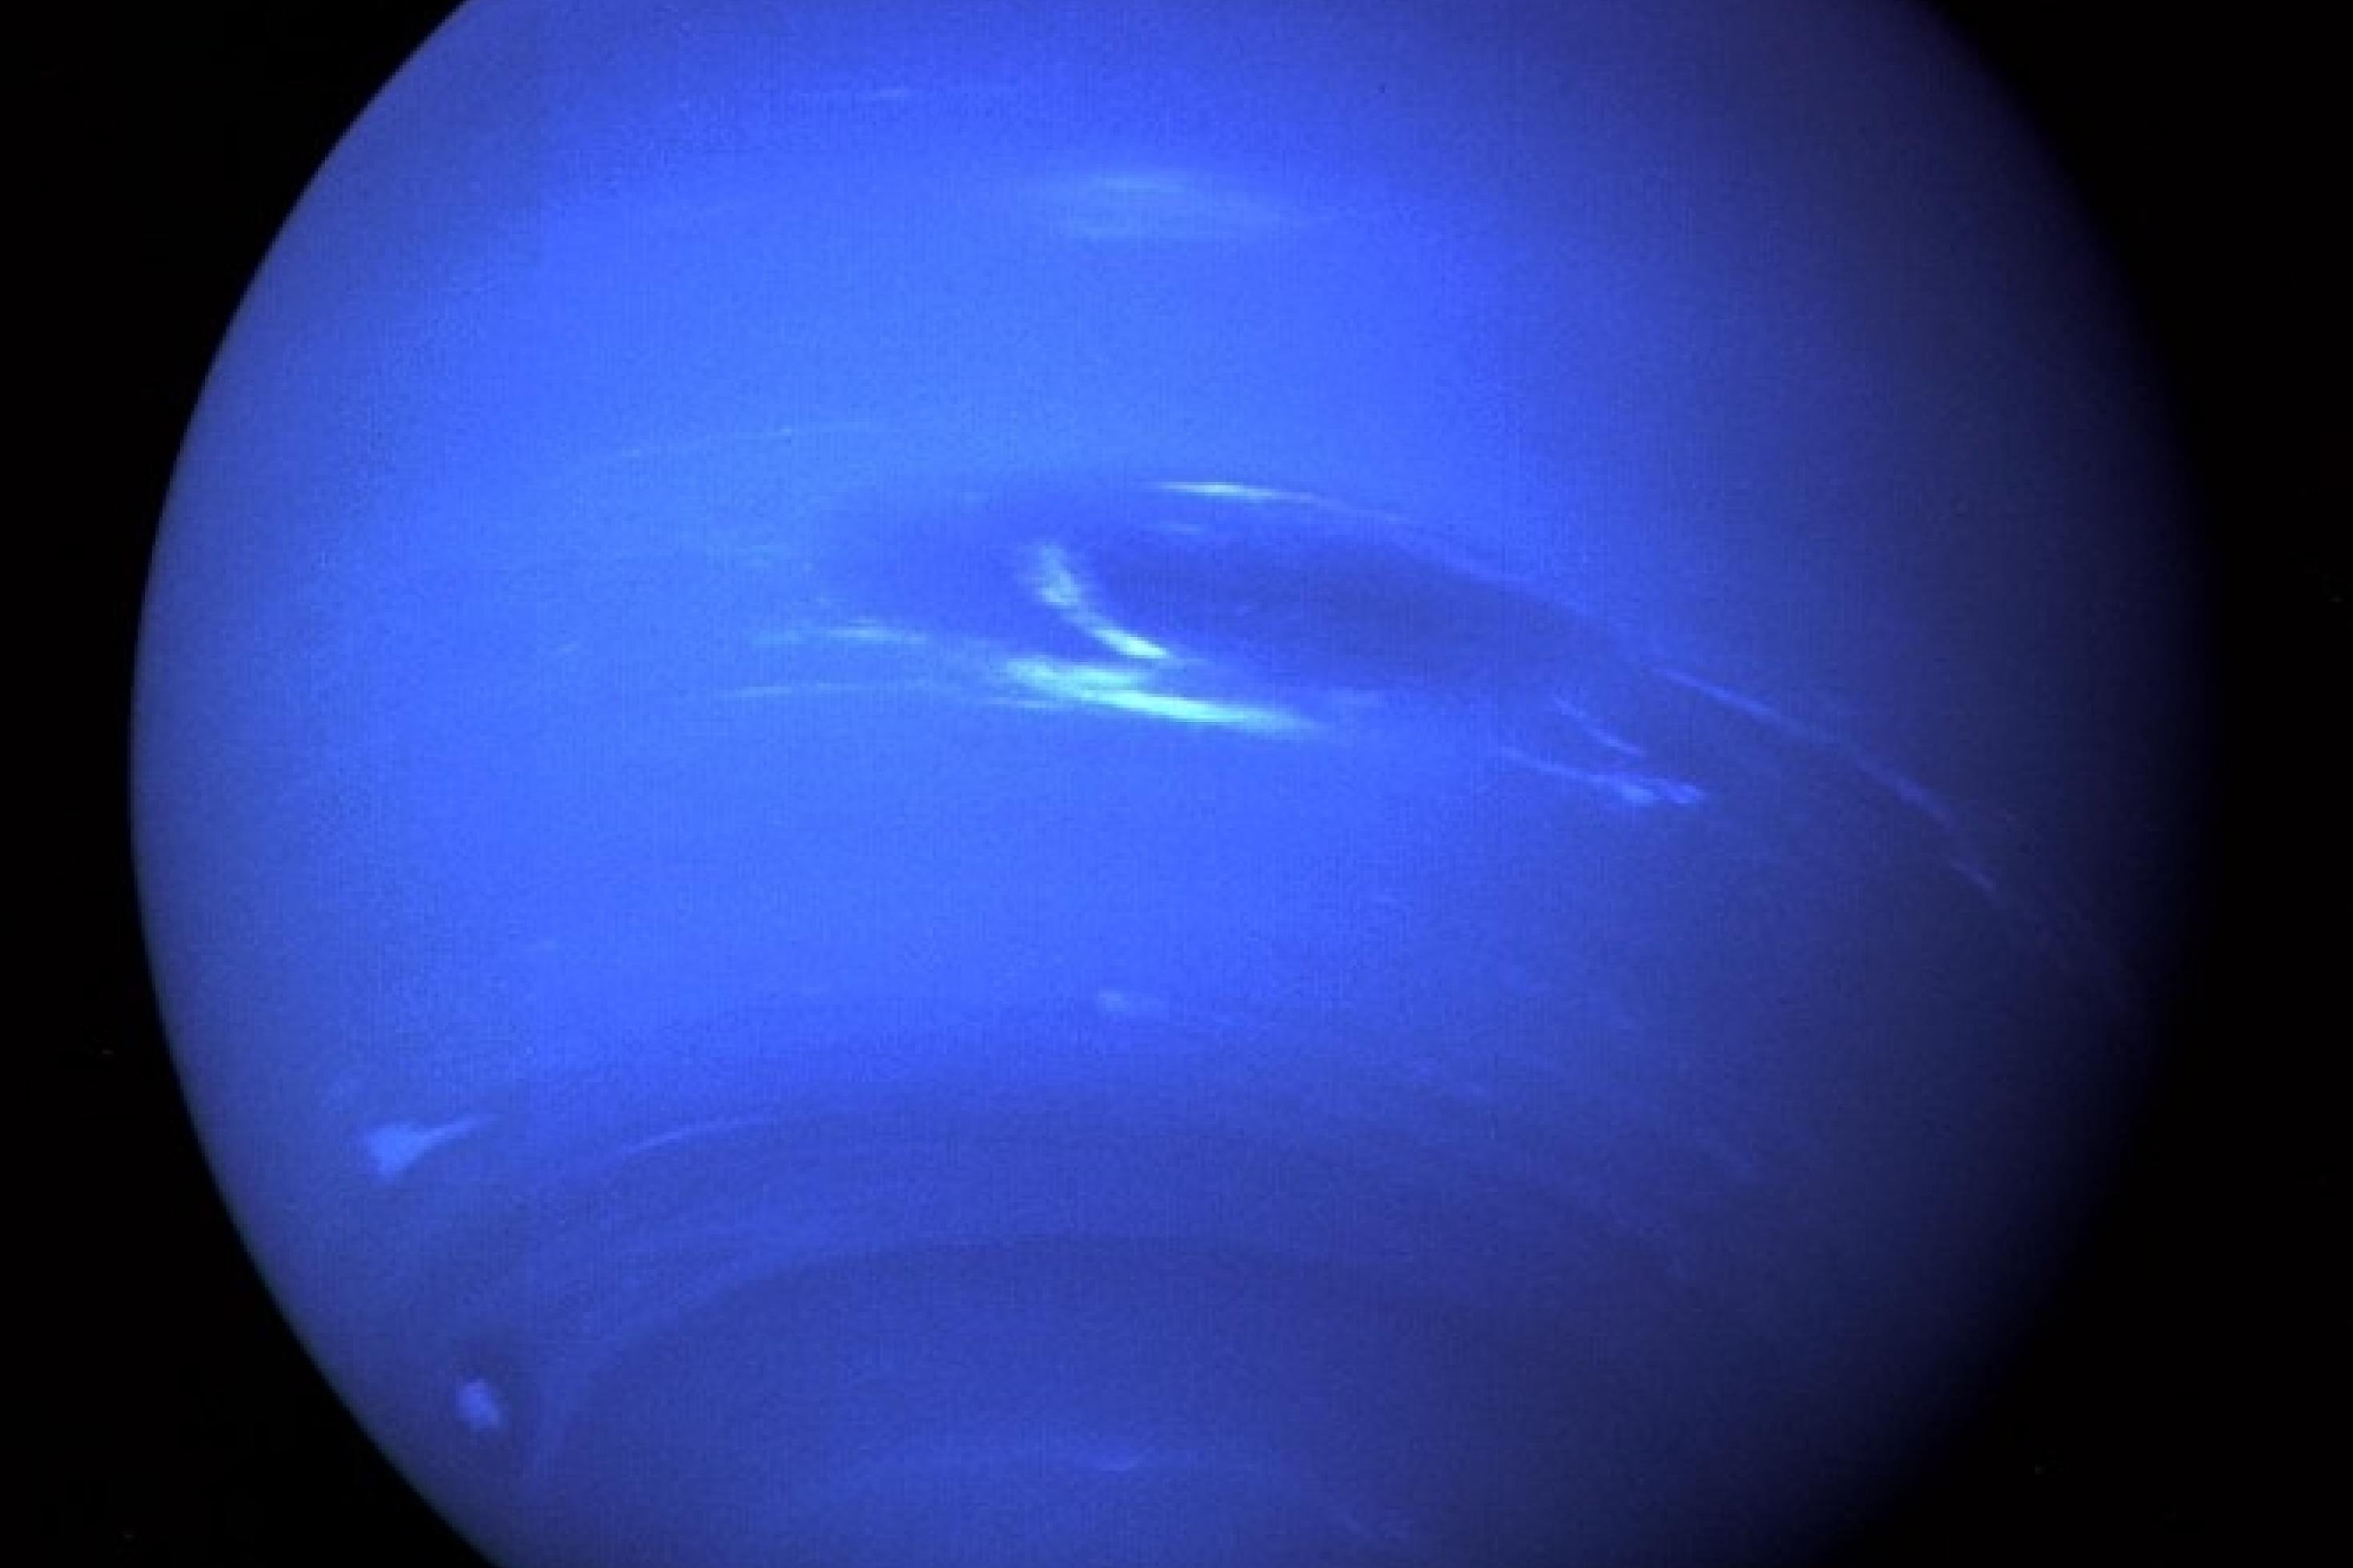 Neptun, am 22. August 1989 von Voyager 2 aufgenommen, zeigt wenig Detailreichtum – ähnlich wie der zuvor besuchte Uranus.